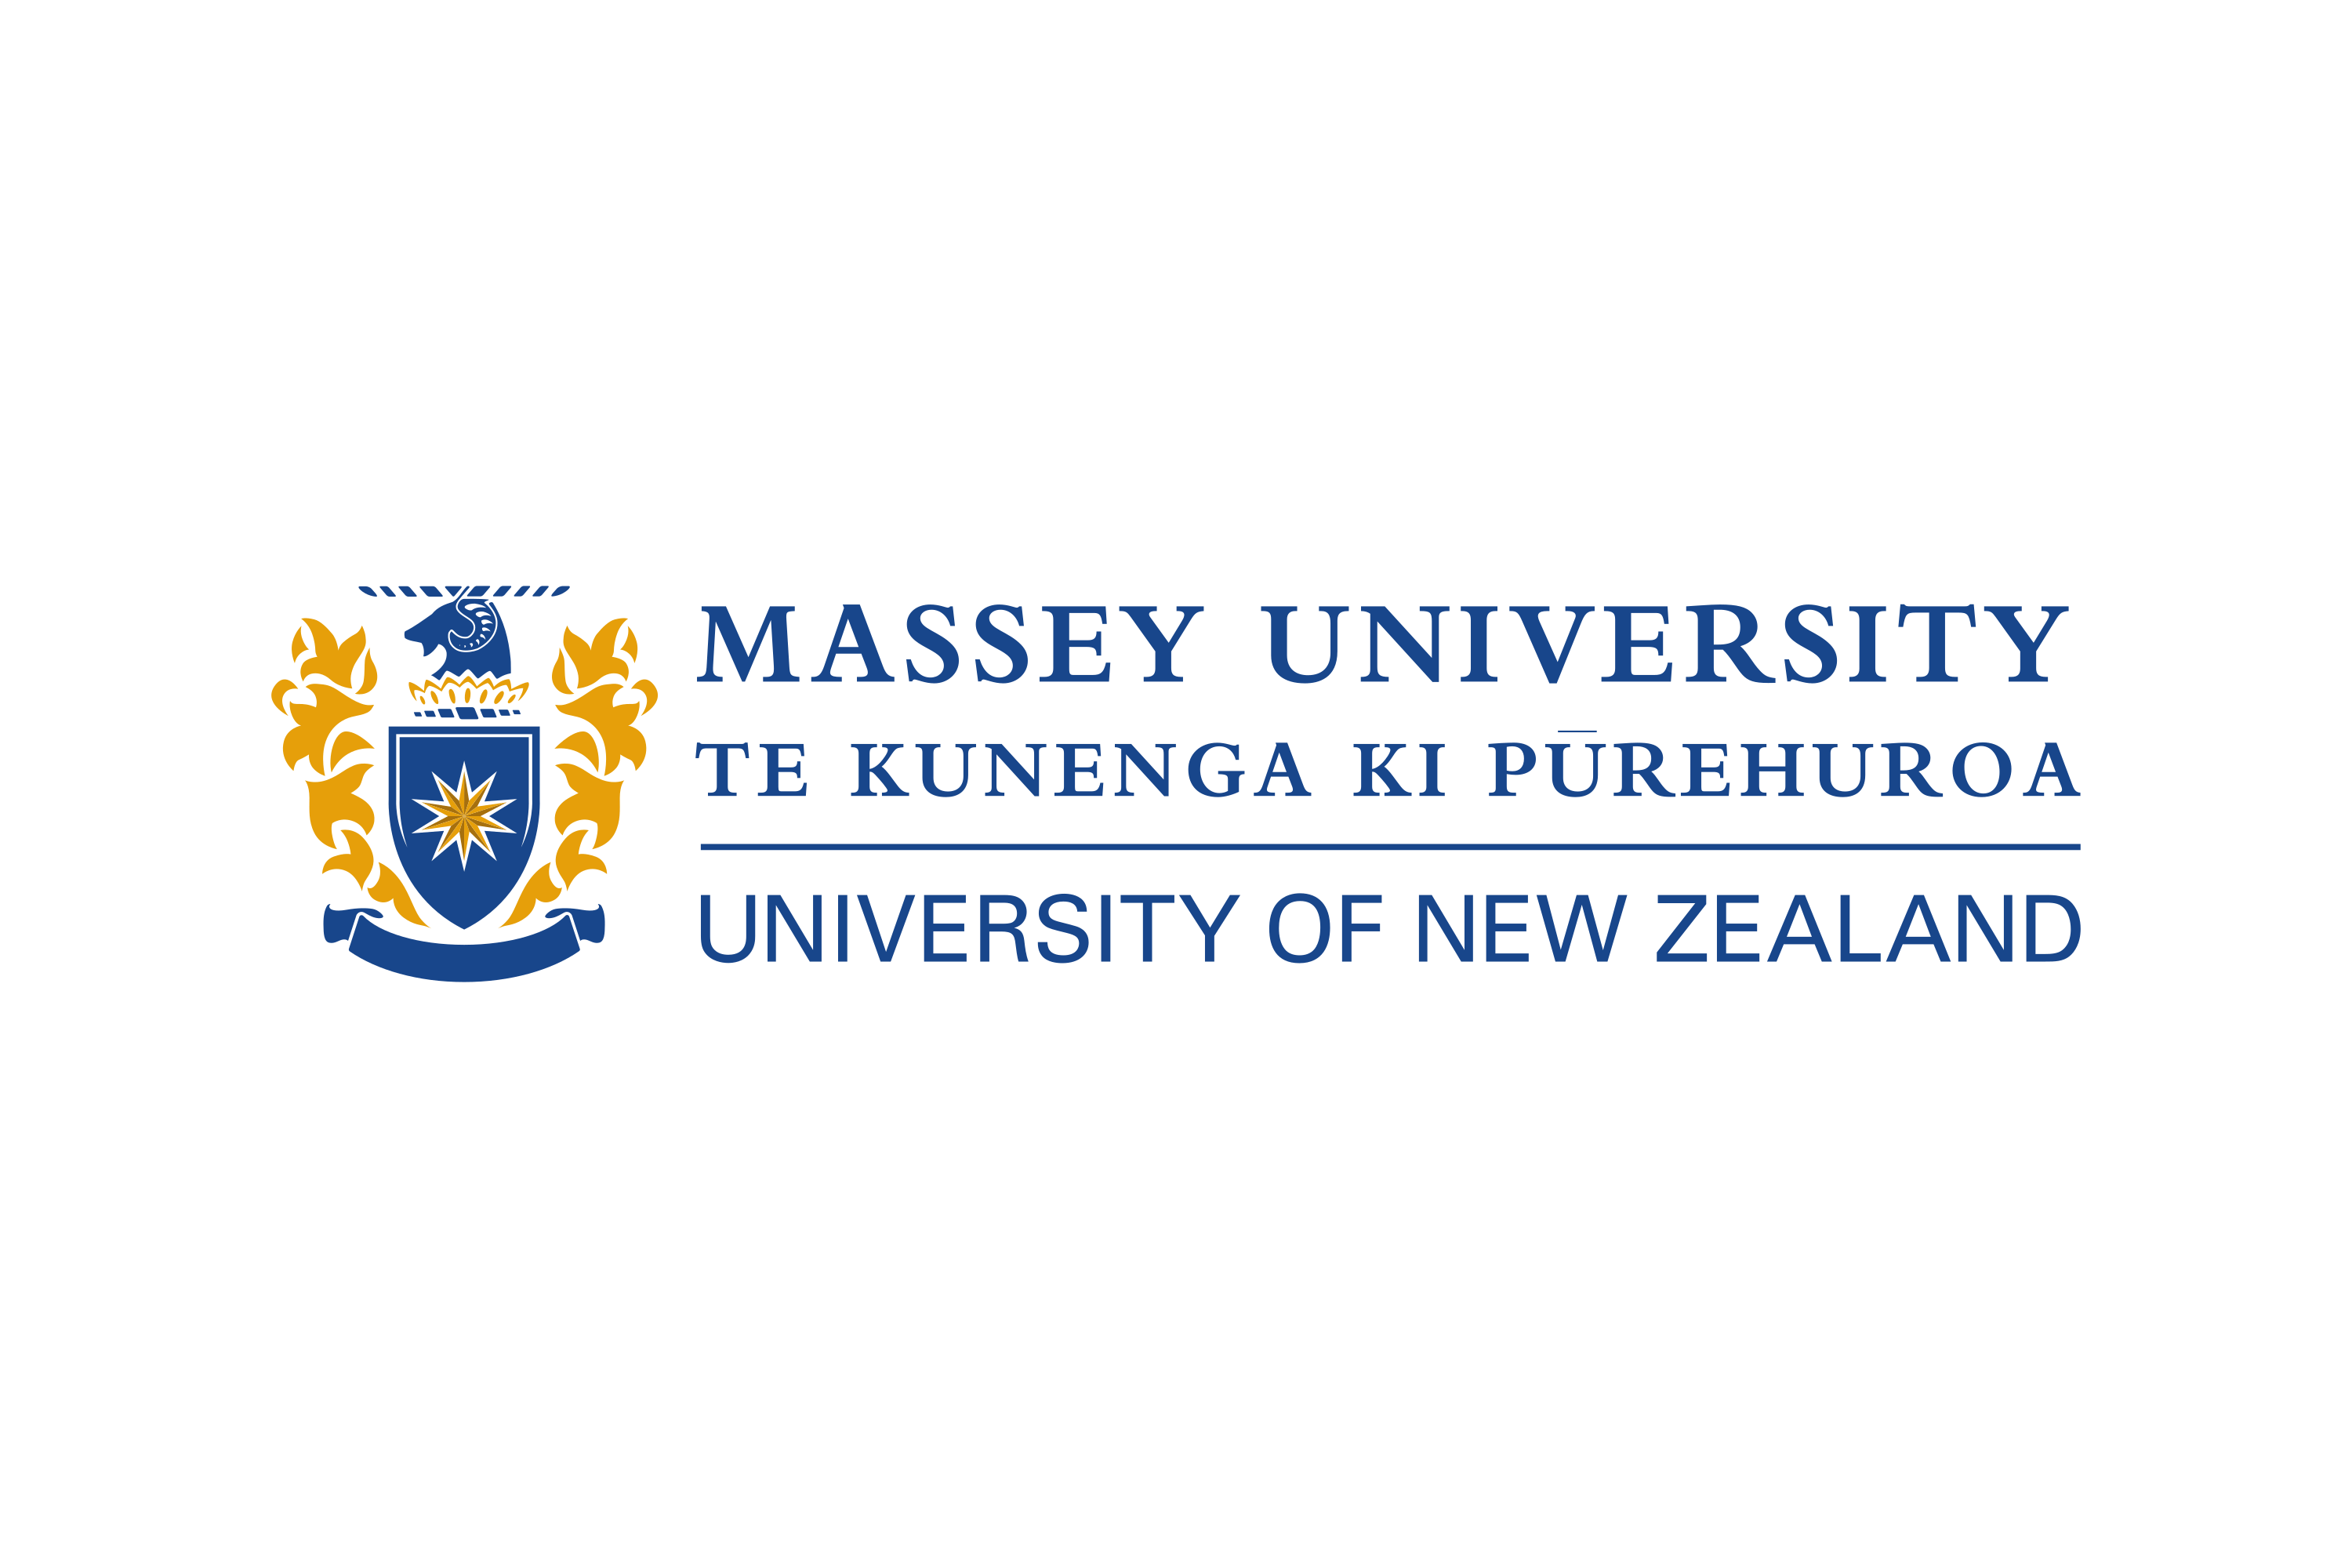 Download Massey University Logo in SVG Vector or PNG File Format - Logo